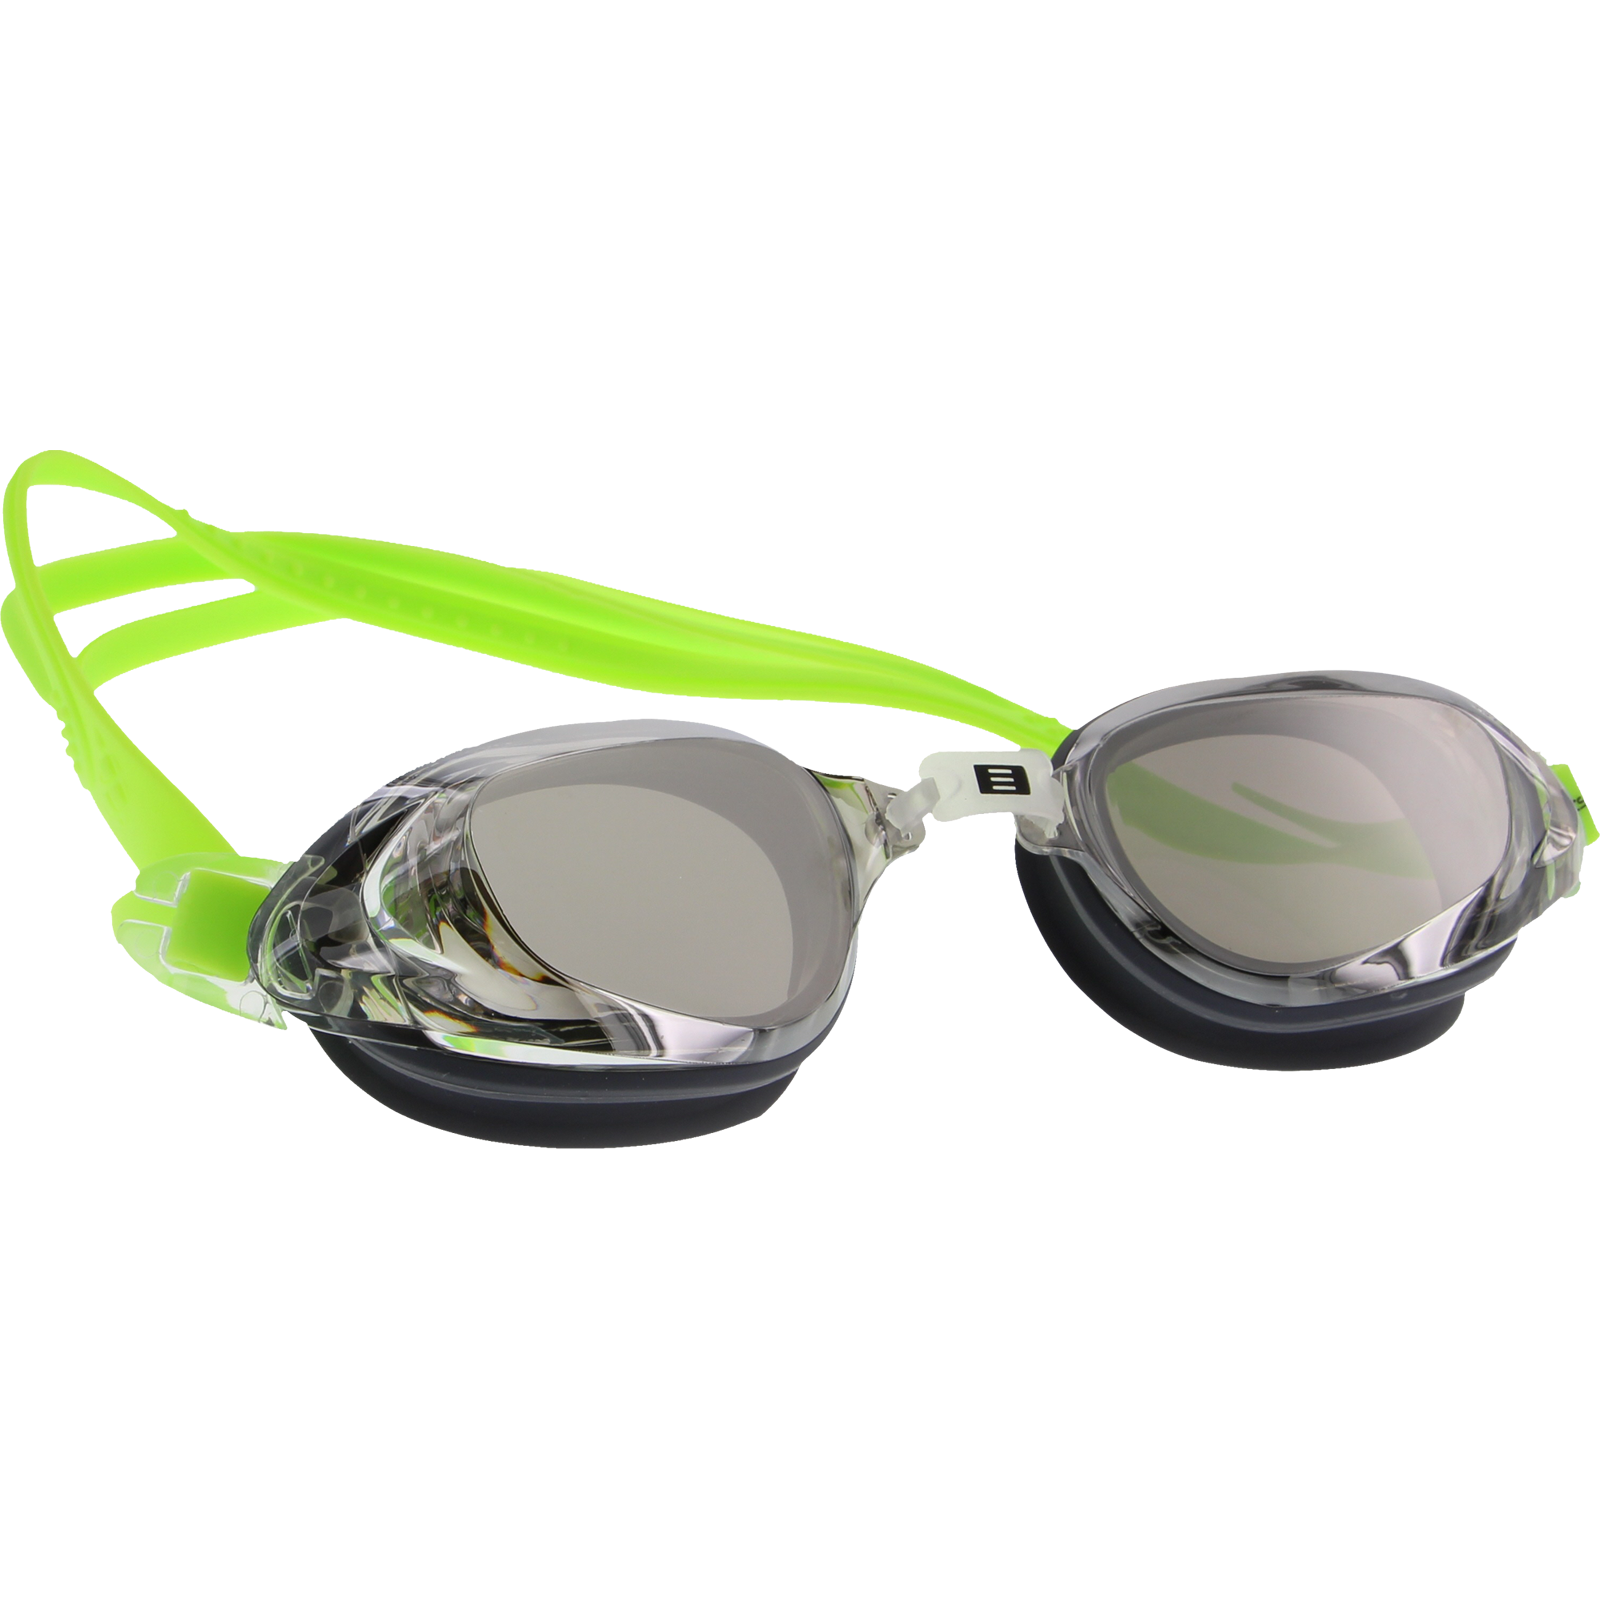 DMC Pro Swim Goggles - Neon Green/Charcoal